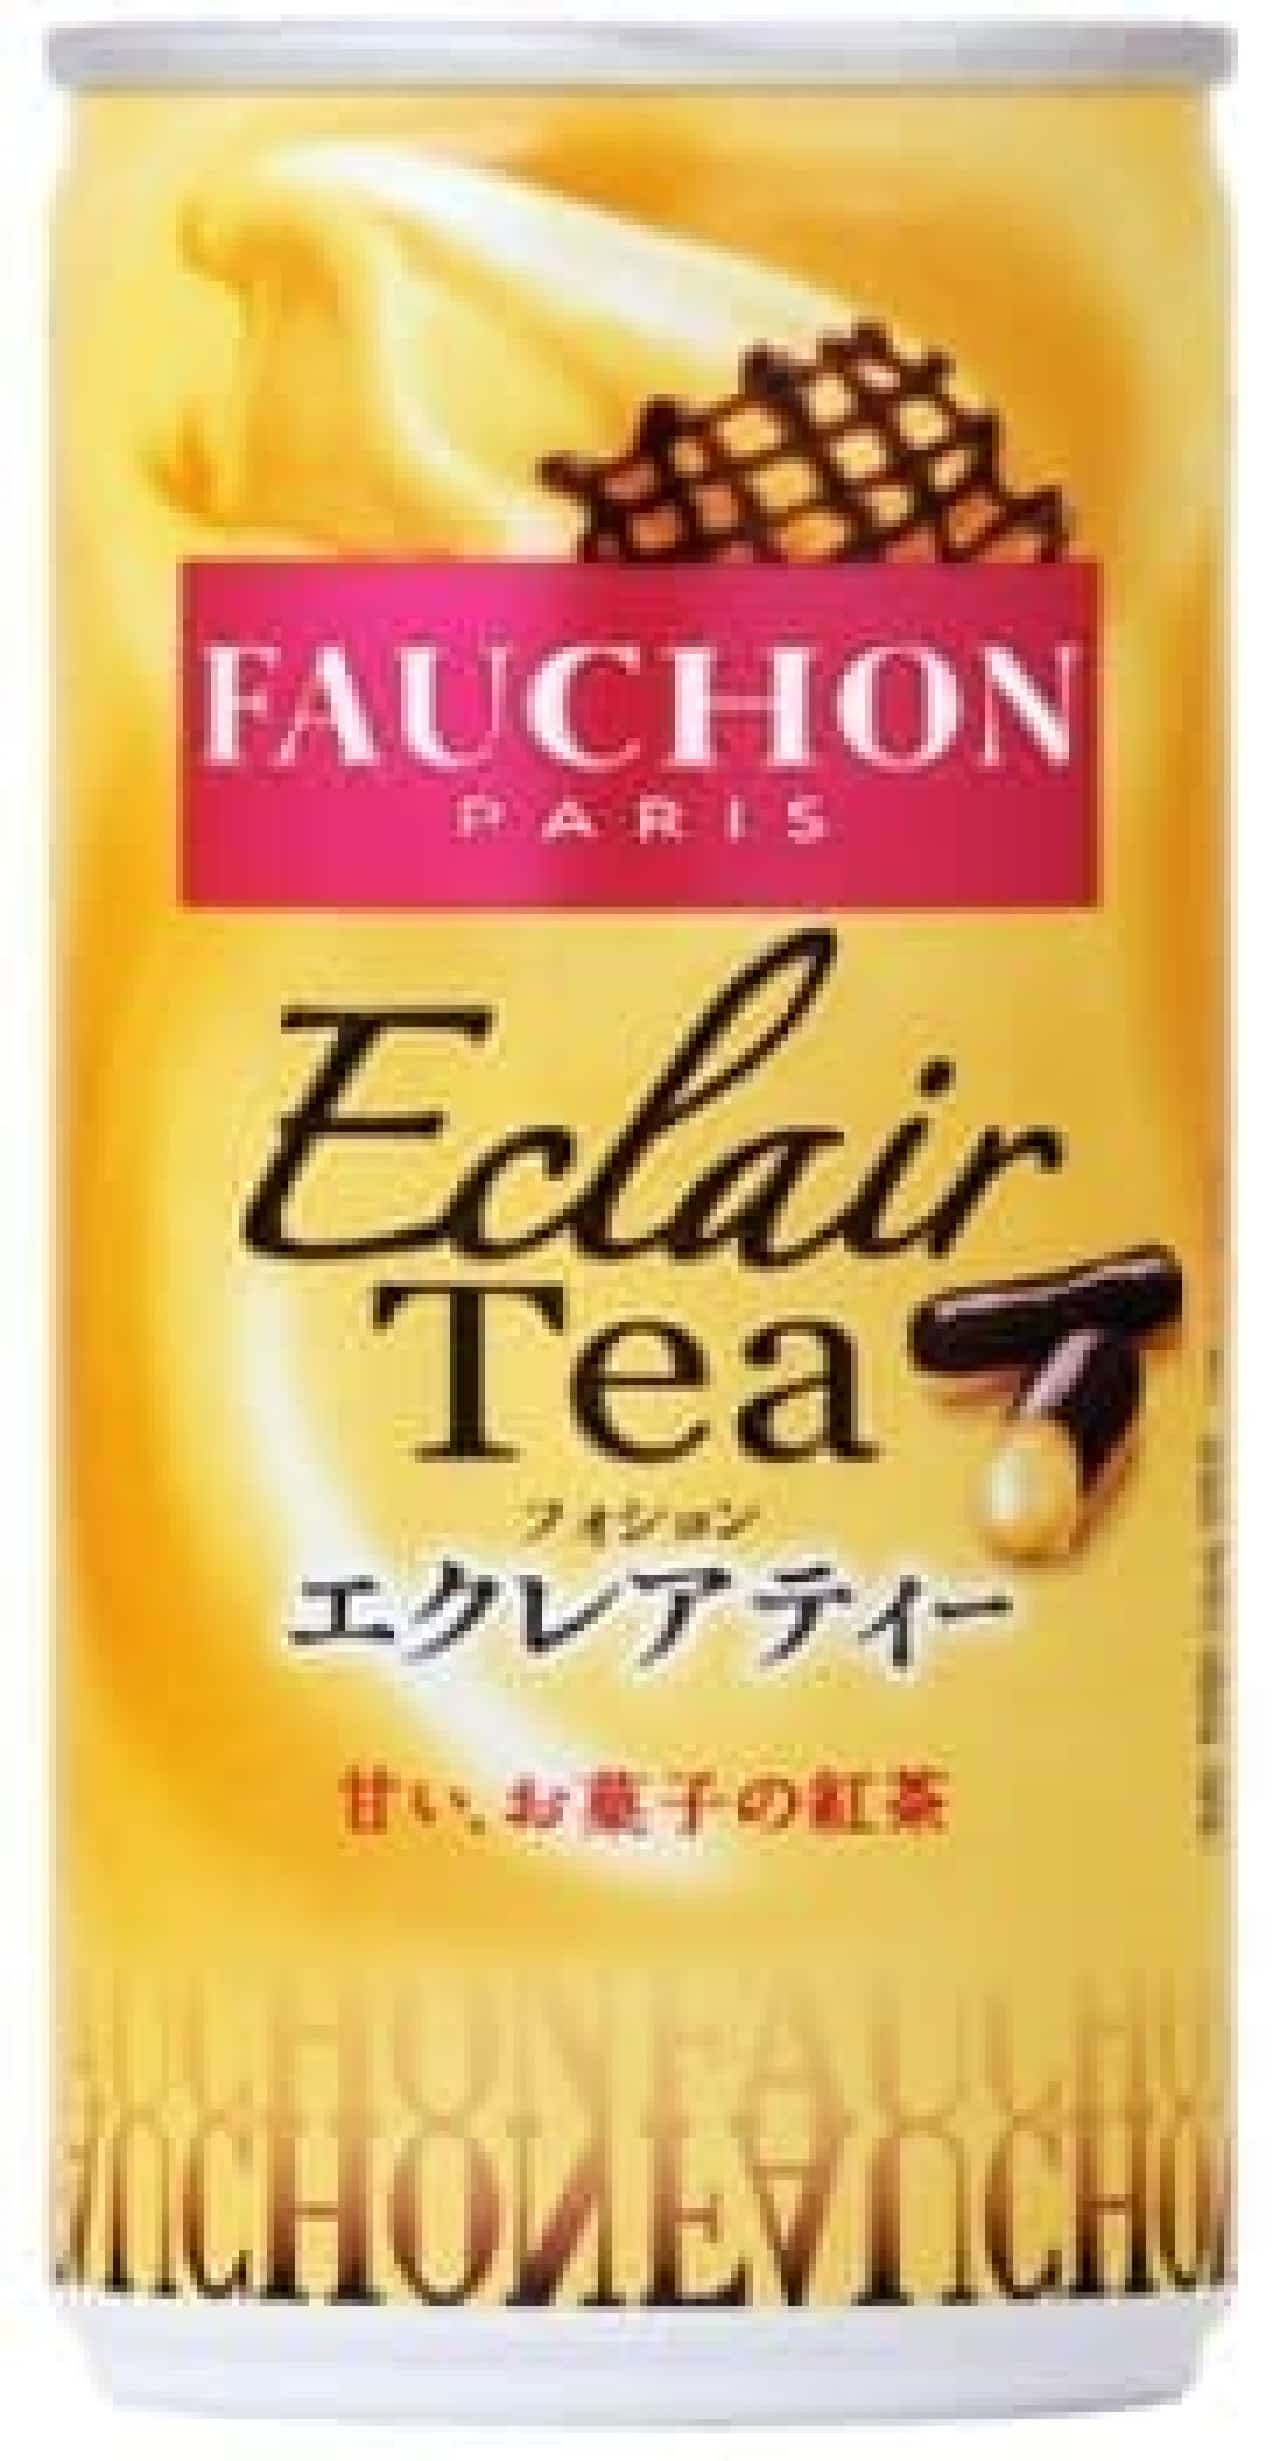 "Eclair Tea" inspired by Fauchon's Eclair